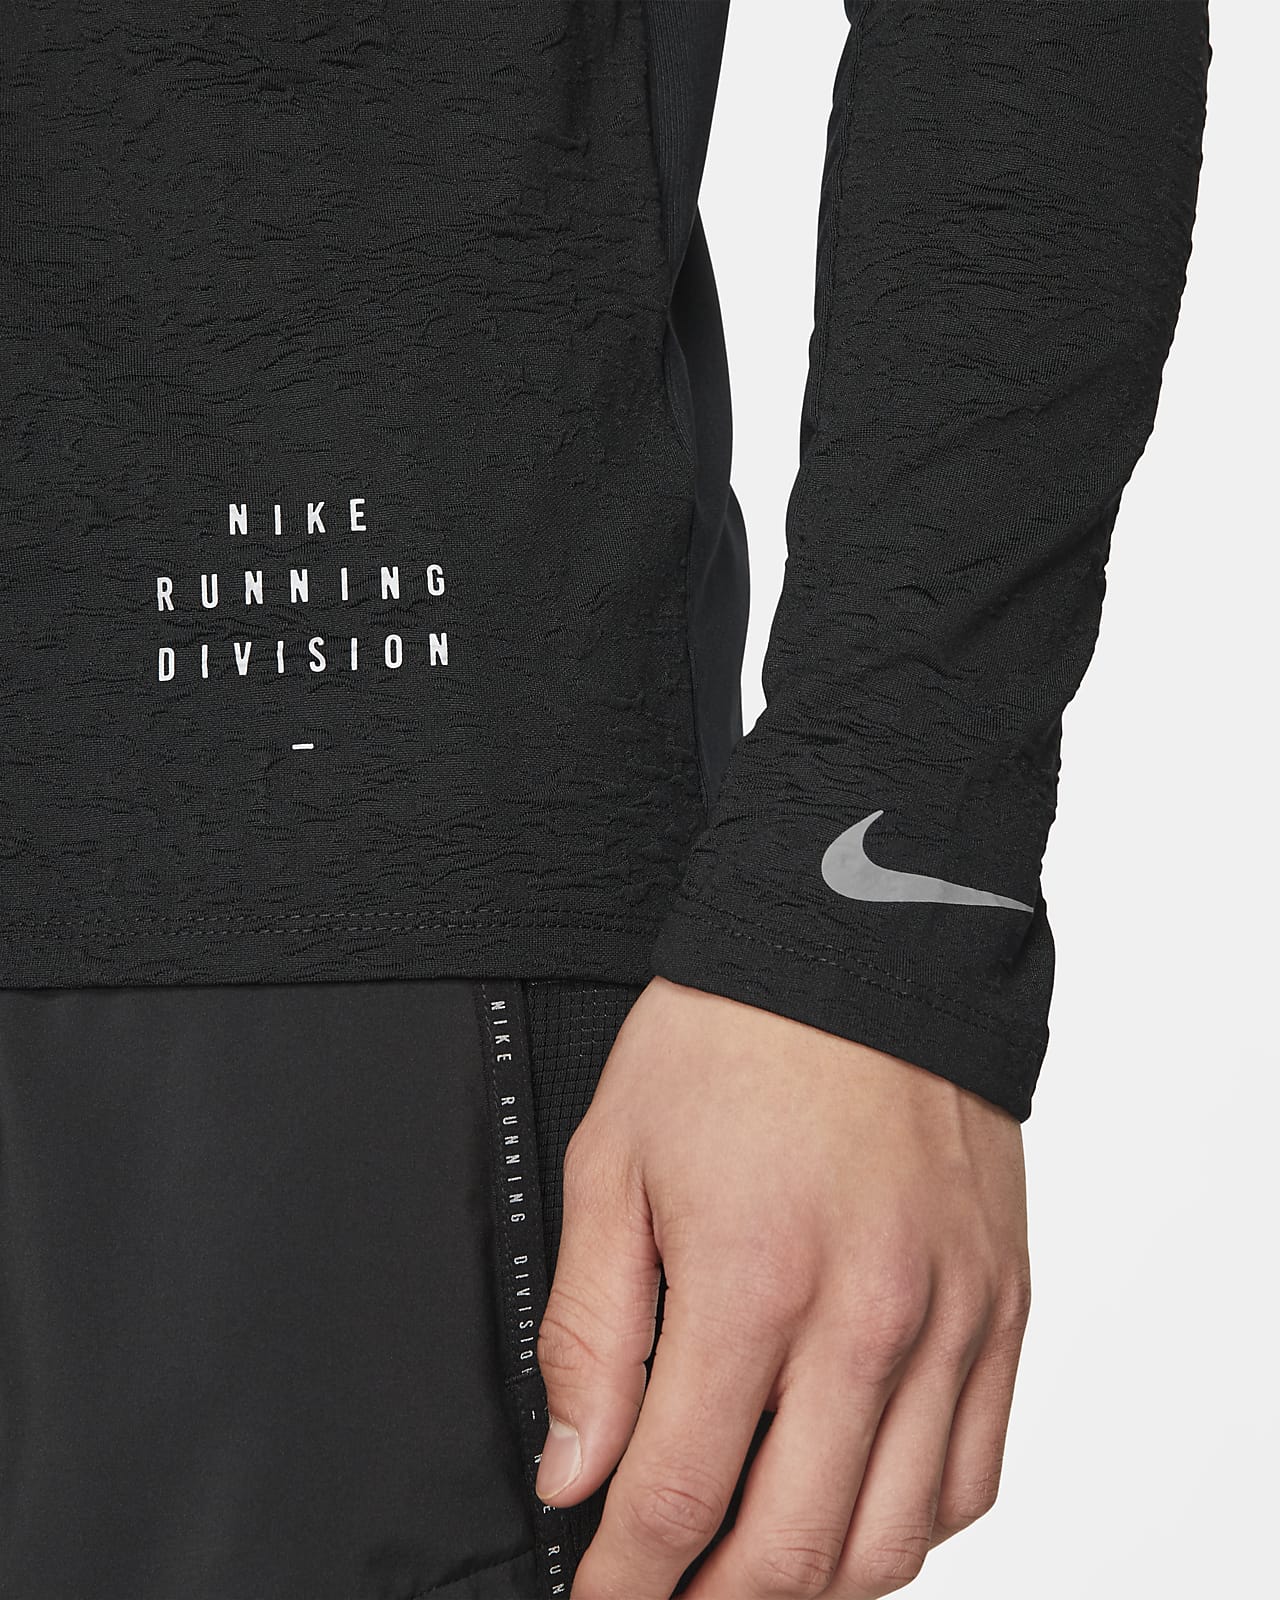 Nike Dri-FIT Run Division Men's Running 